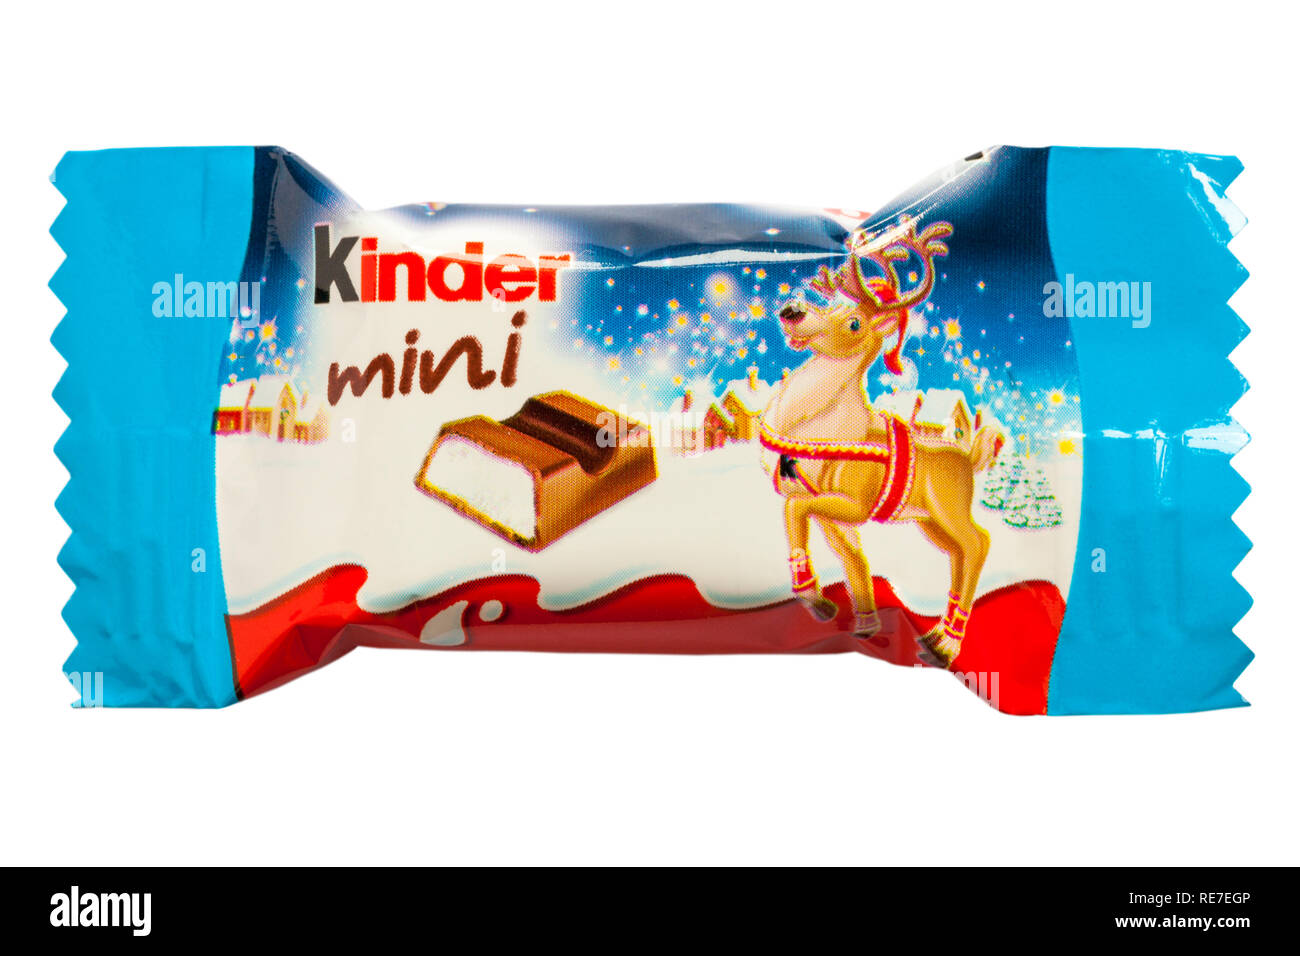 Kinder cioccolato mini bar isolato su sfondo bianco - di renne